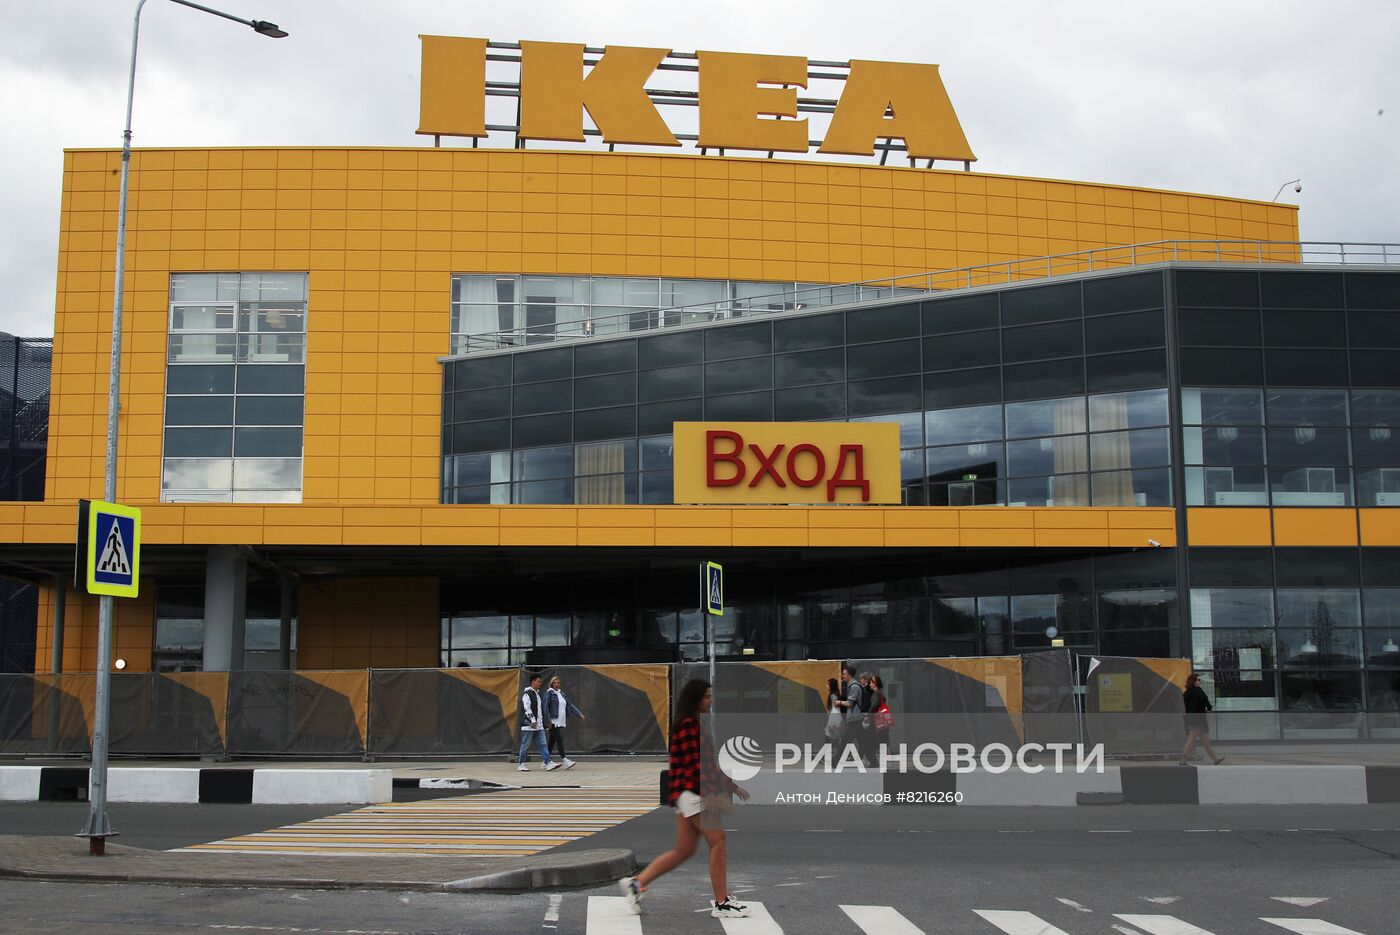 IKEA продает бизнес в России